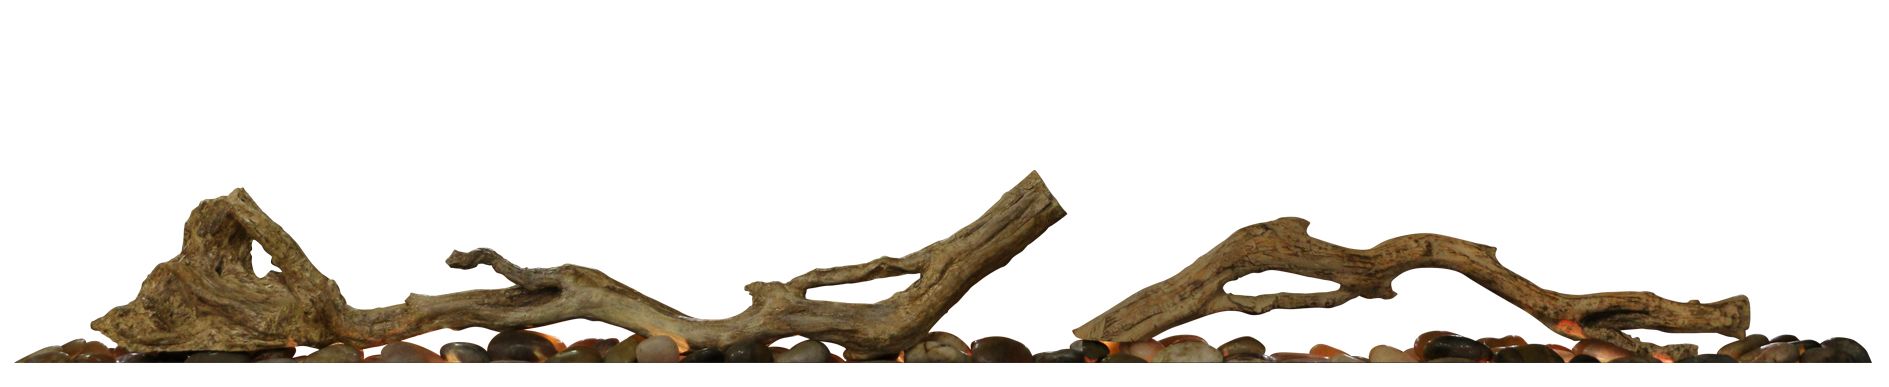 Dimplex Driftwood für Ignite XL 50"